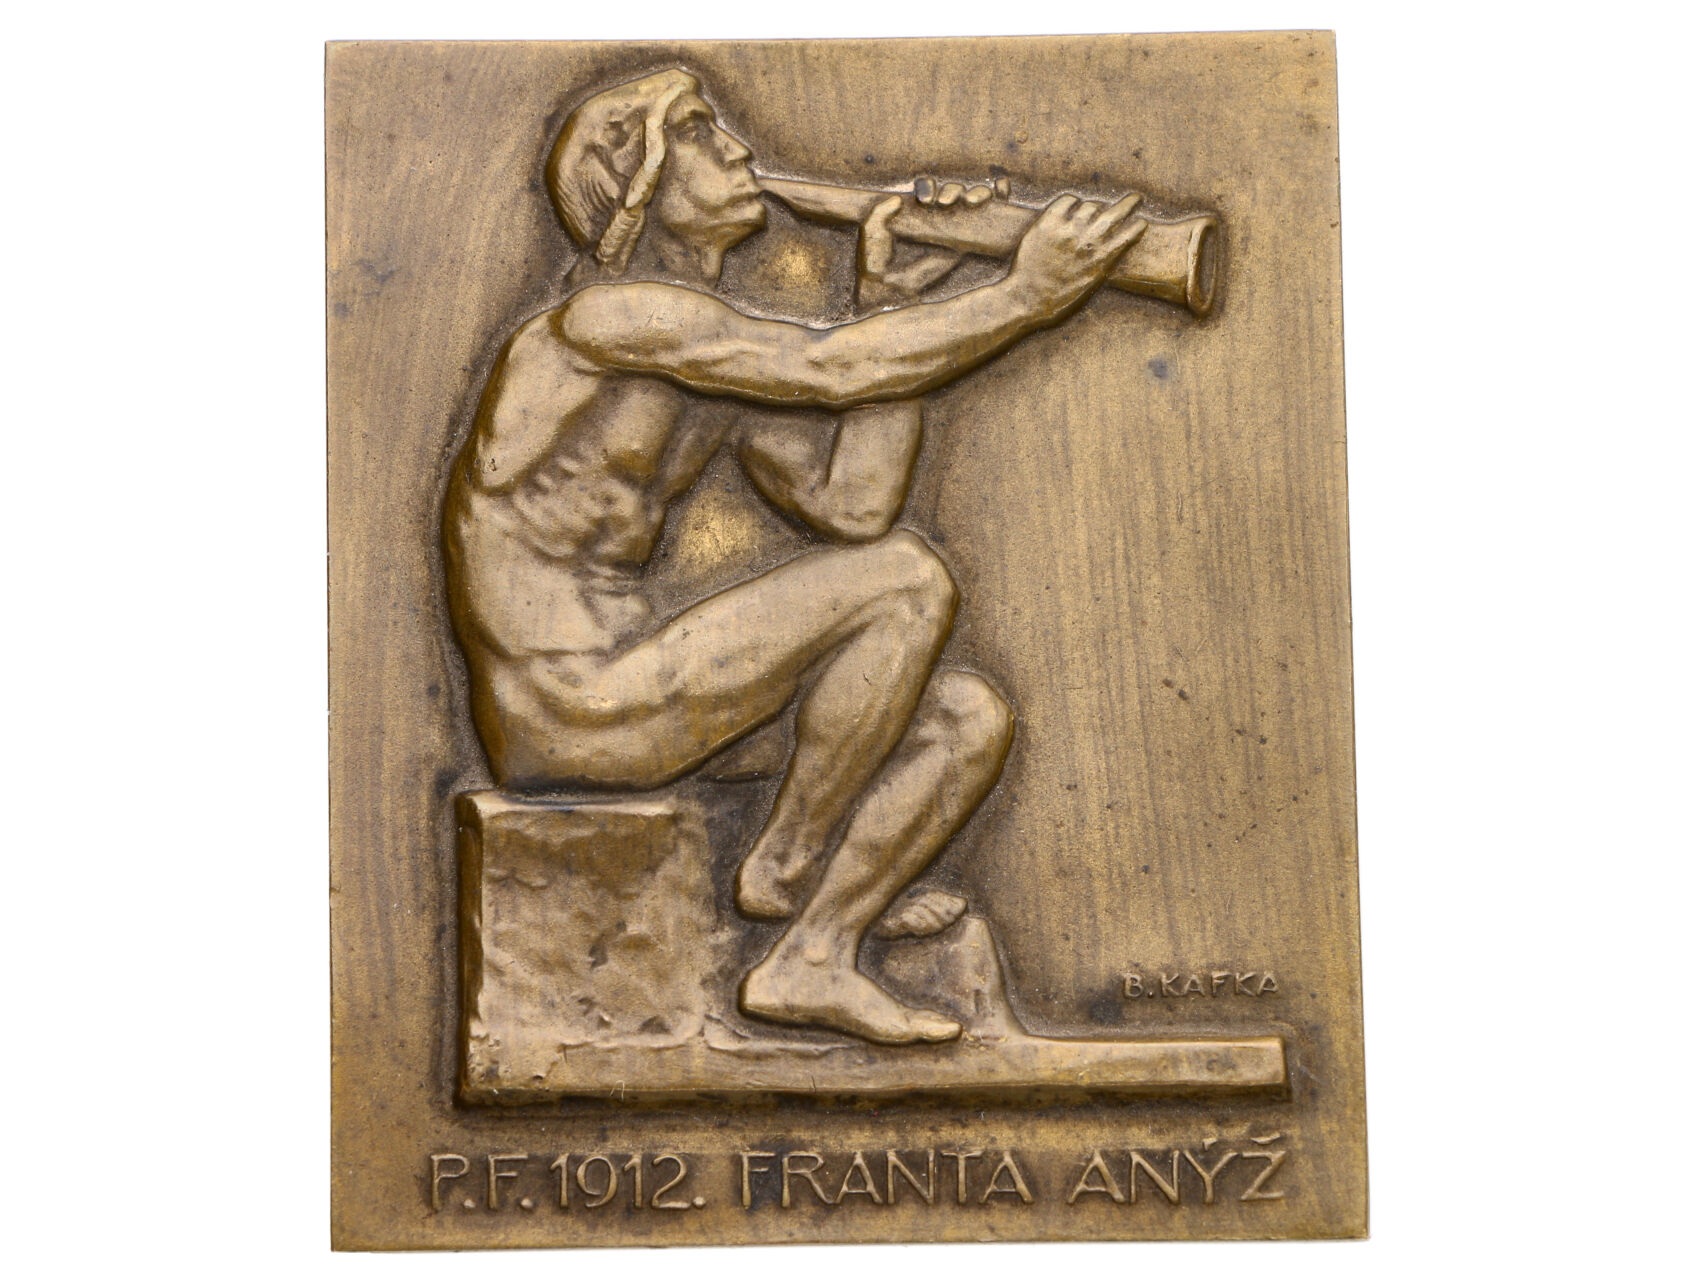 PF Franta Anýž 1912 - jednostranná plaketa, bronz 58x48 mm, signováno B. Kafka, původní obal